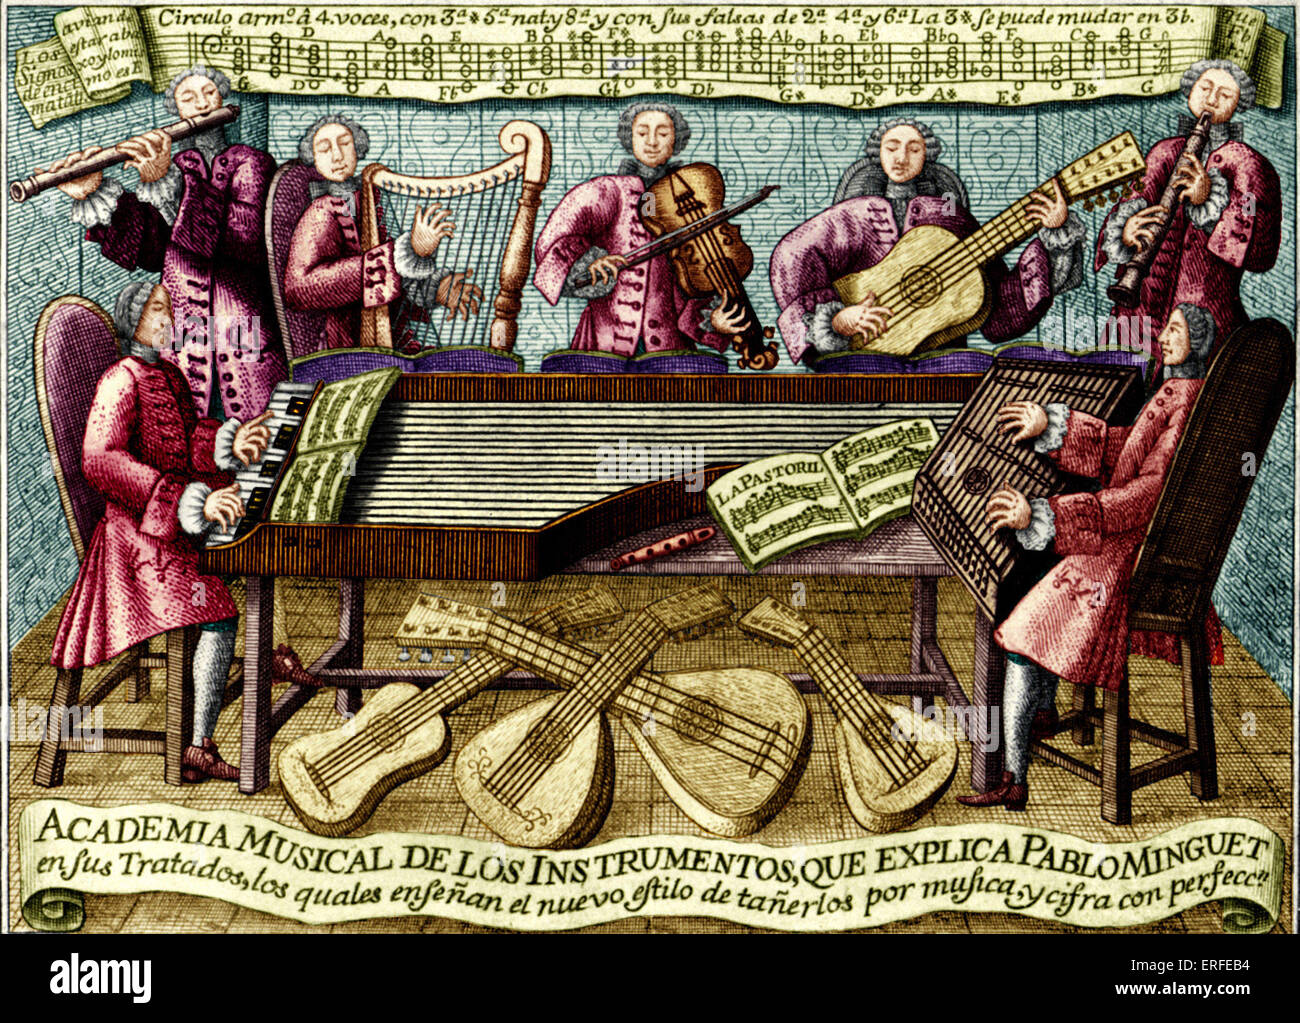 Spanische musikalische Abhandlung Abdeckung, 1752. "Regeln und Tipps für das Spielen von den besten musikalischen Instrumenten" - Abhandlung im Stockfoto